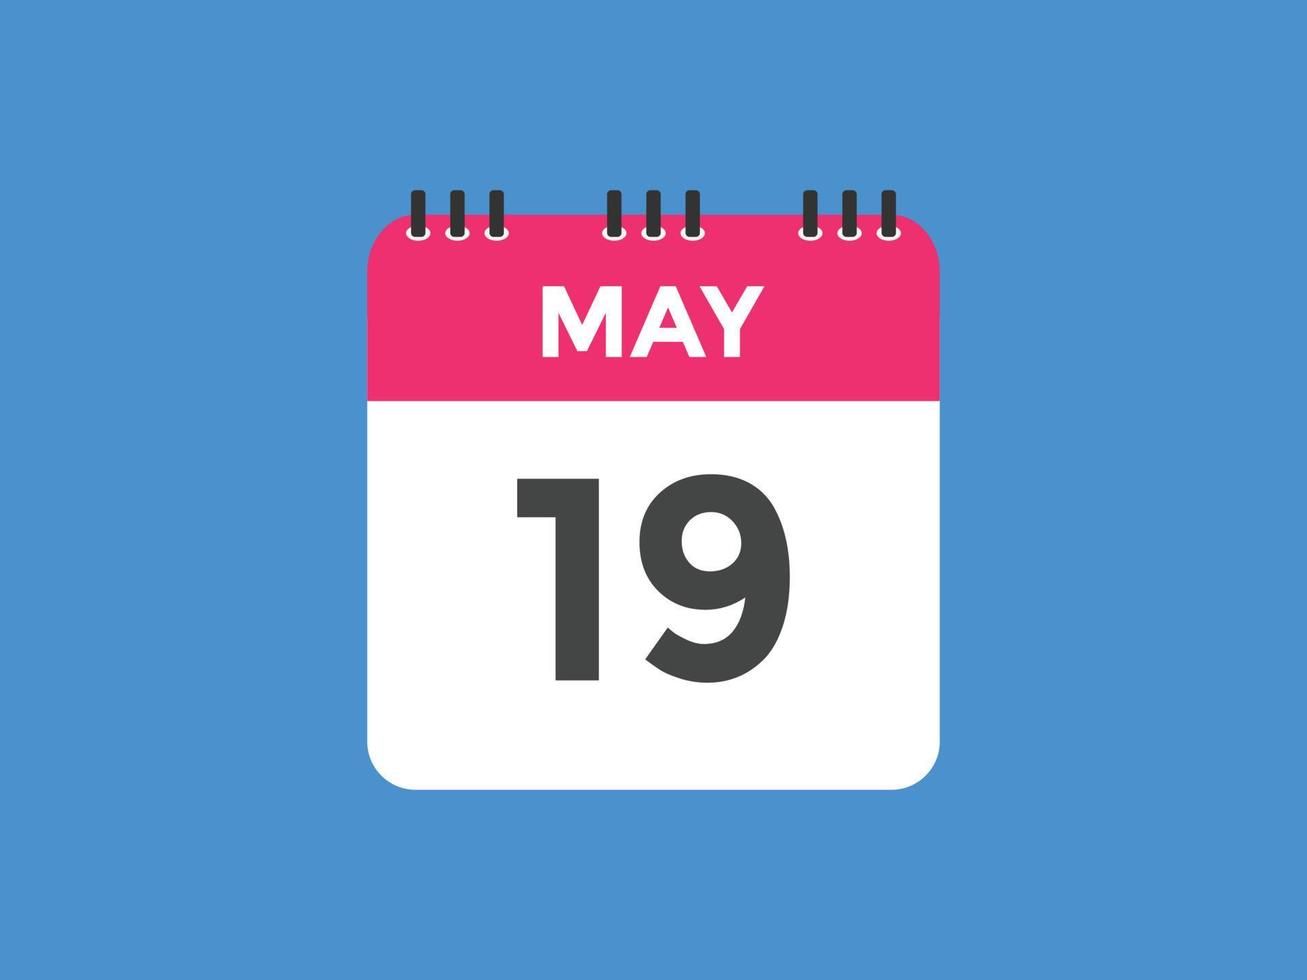 19 de maio lembrete de calendário. 19 de maio modelo de ícone de calendário diário. calendário 19 de maio modelo de design de ícone. ilustração vetorial vetor